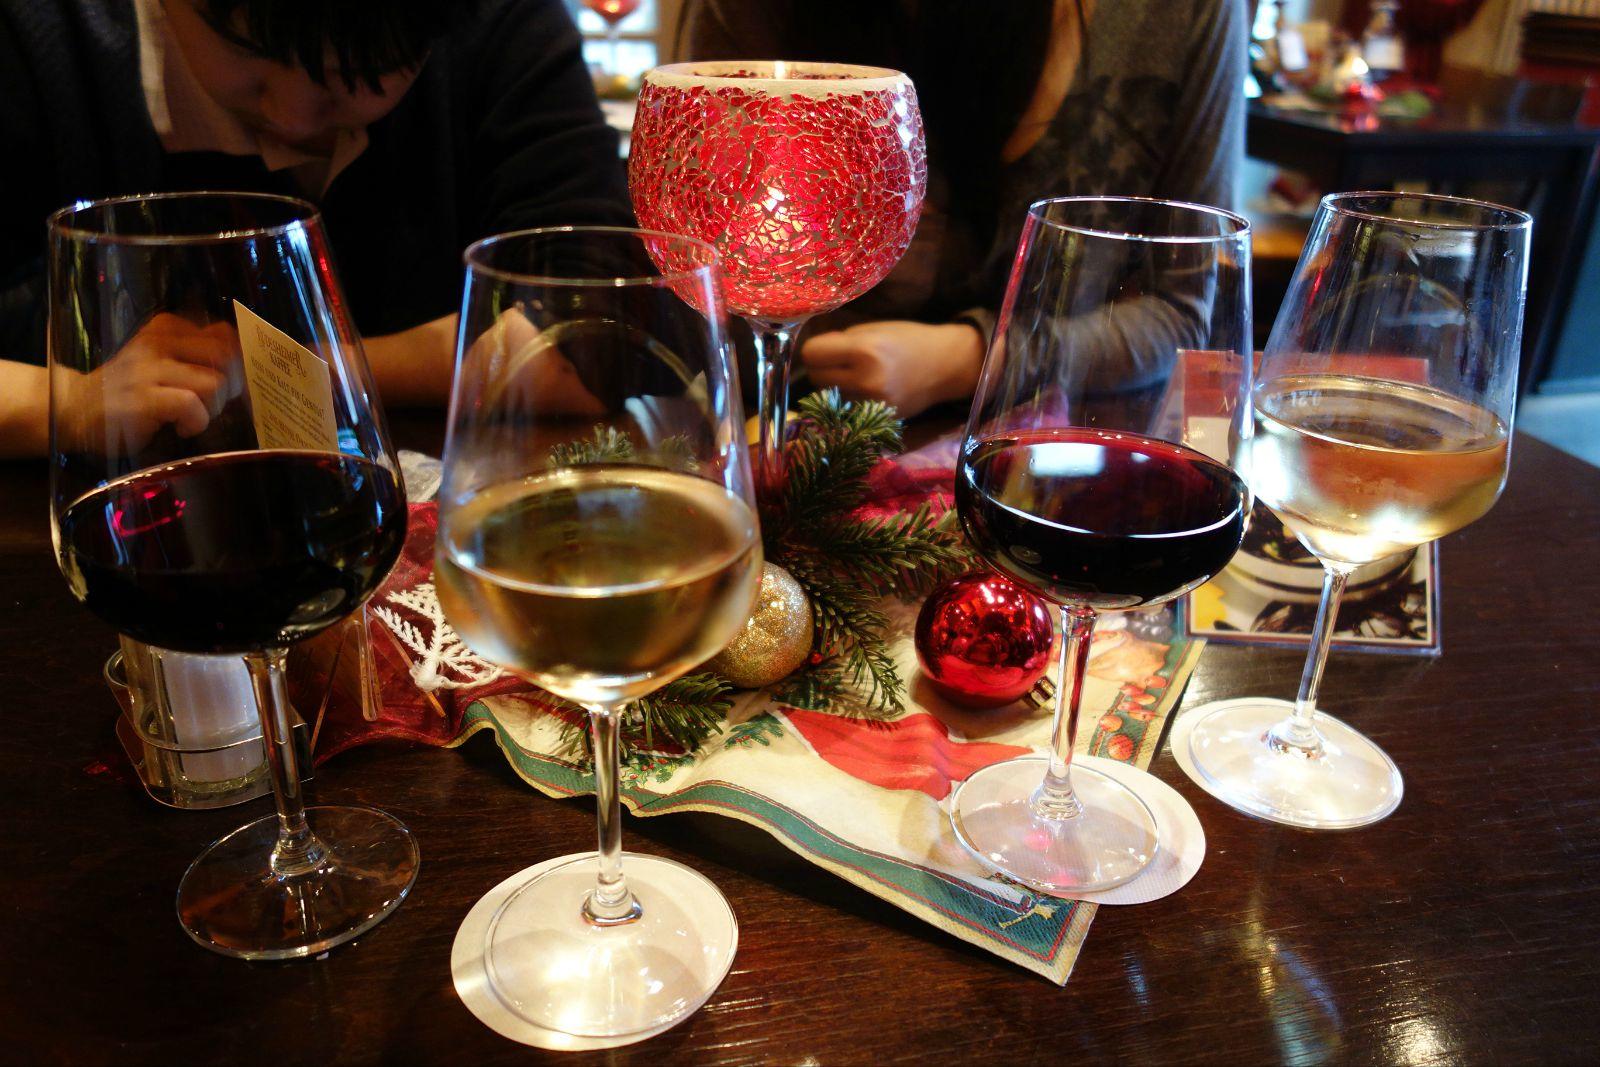 去雷司令葡萄酒的产地吕德斯海姆的酒巷——画眉巷品尝葡萄酒